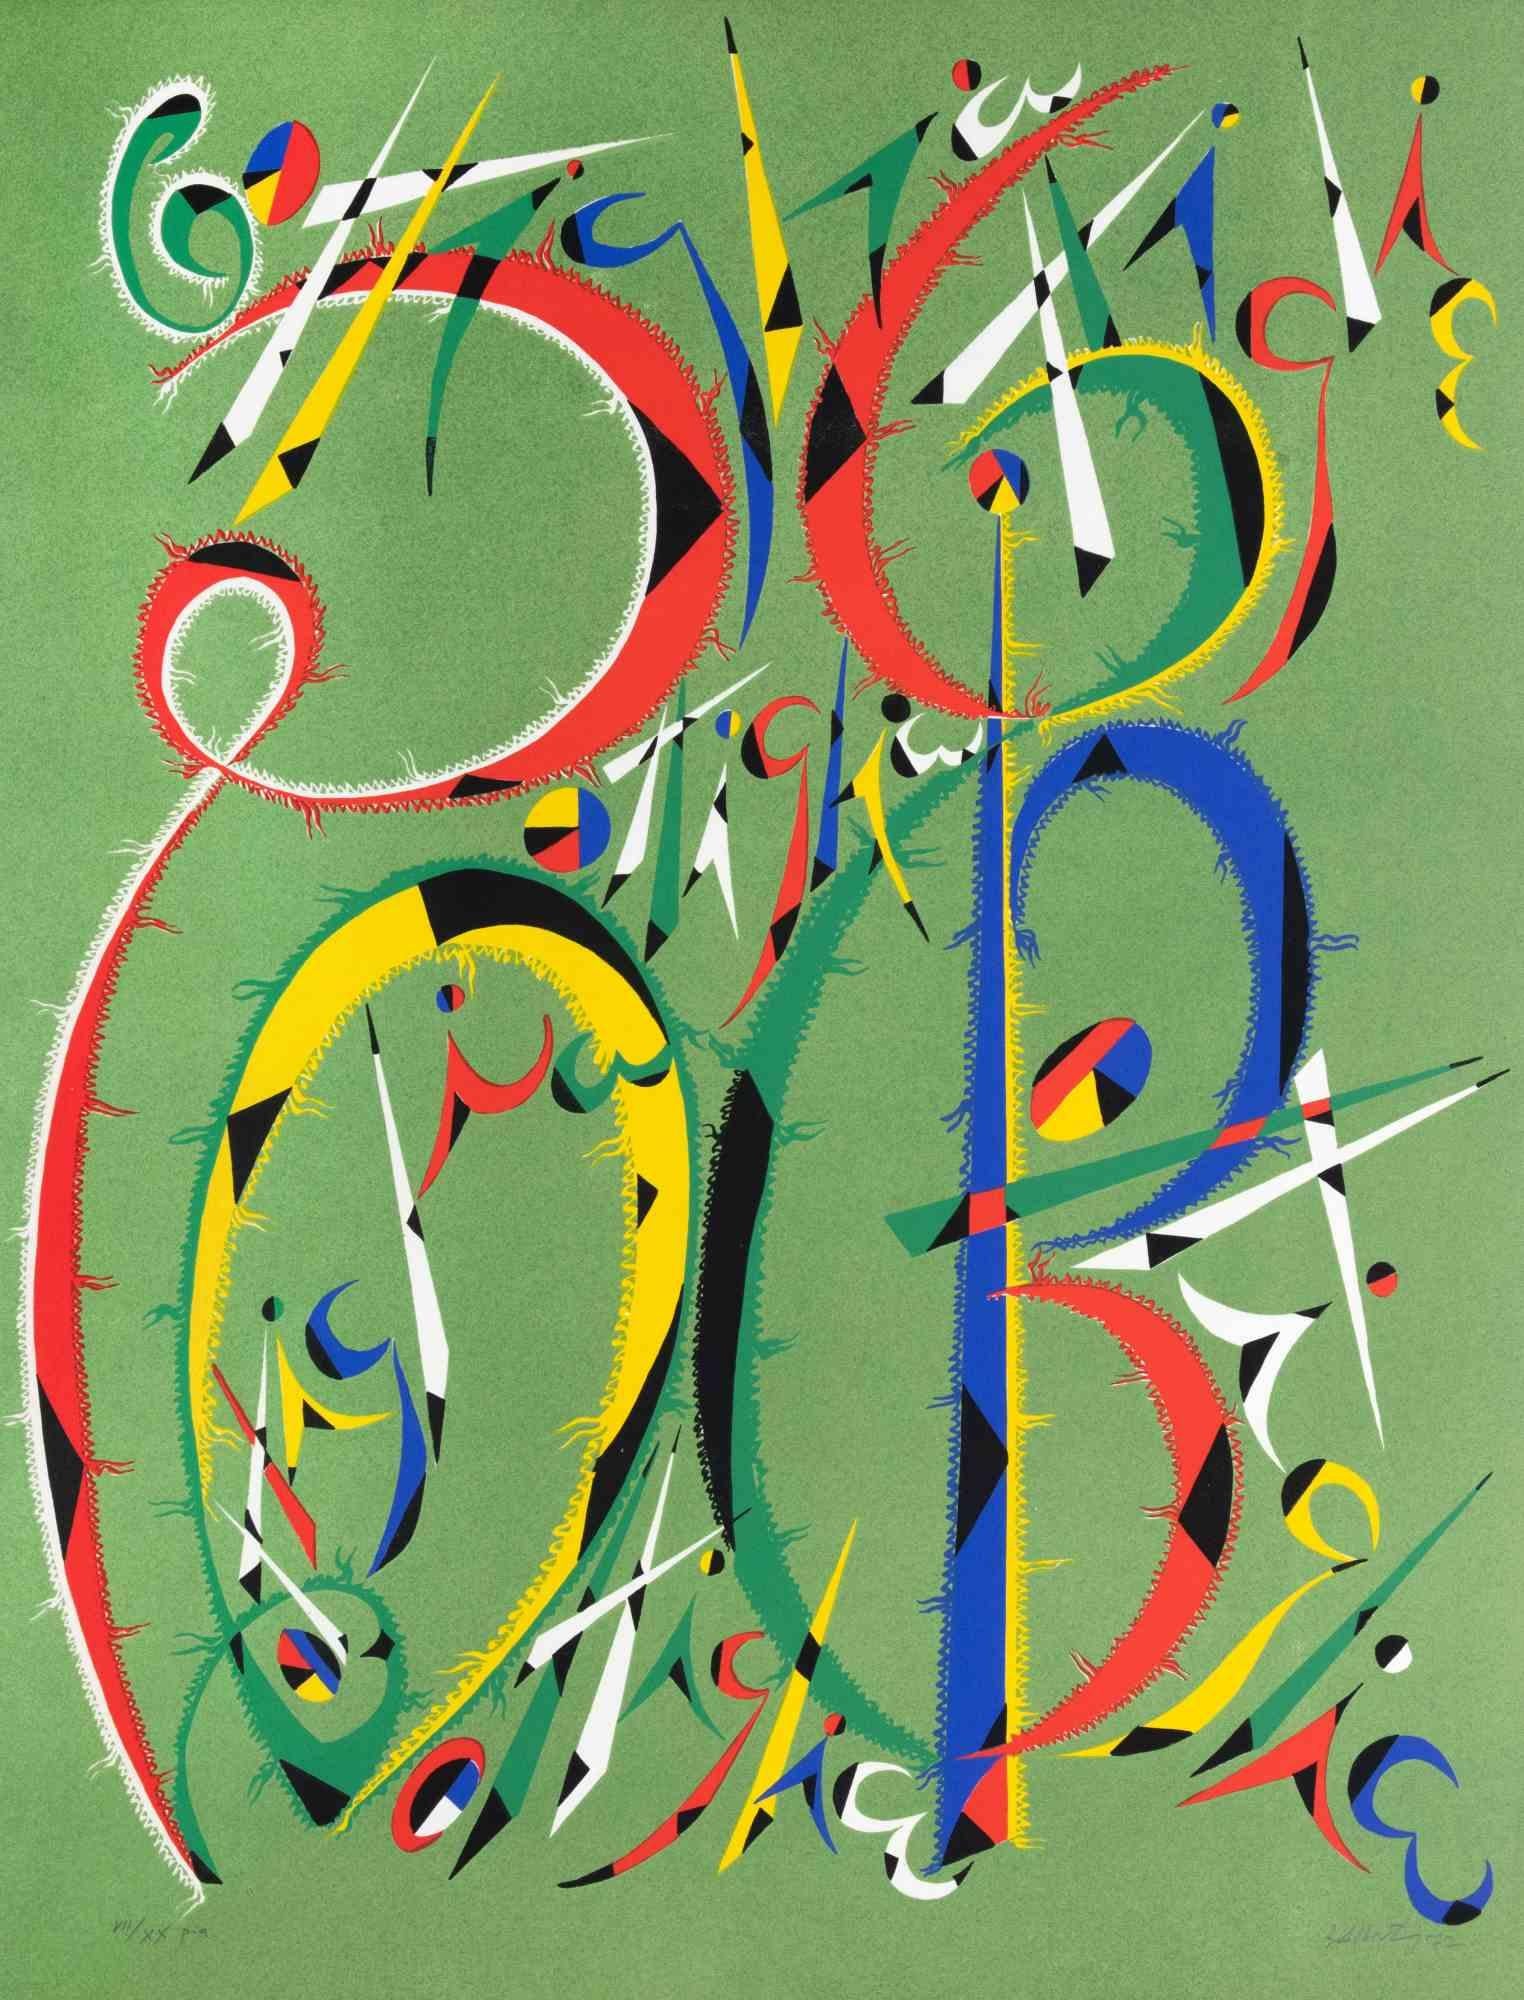 La lettre B de Rafael Alberti, de la série Alphabet, est une lithographie réalisée par Rafael Alberti en 1972.

Signé à la main et daté dans la marge inférieure droite. Numéroté en bas à gauche.

Édition de VII/XX

L'œuvre d'art représente la lettre